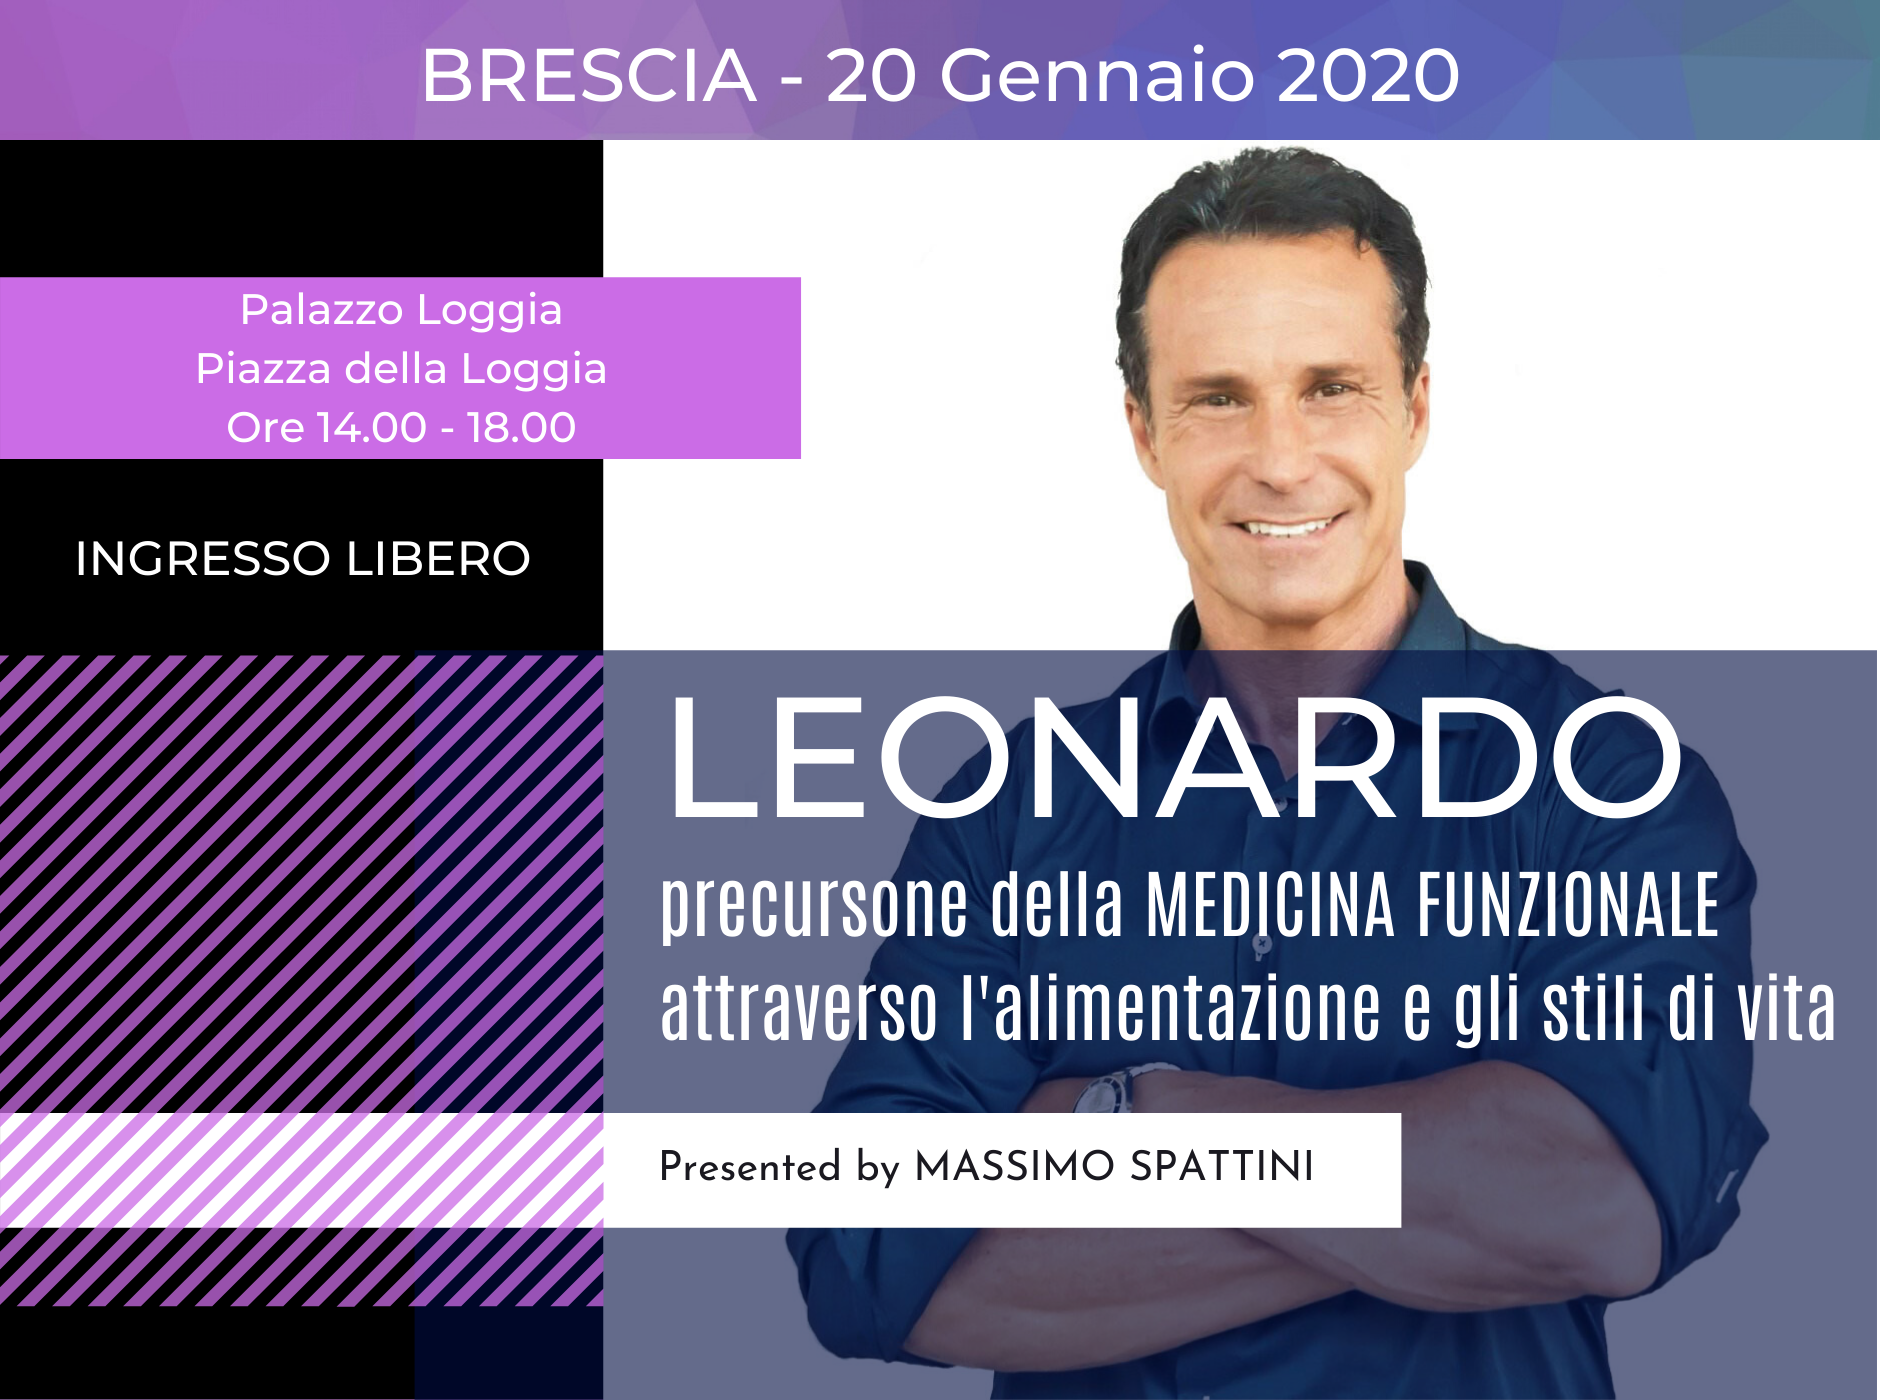 LEONARDO precursore della Medicina Funzionale – Brescia – 20 Gennaio 2020